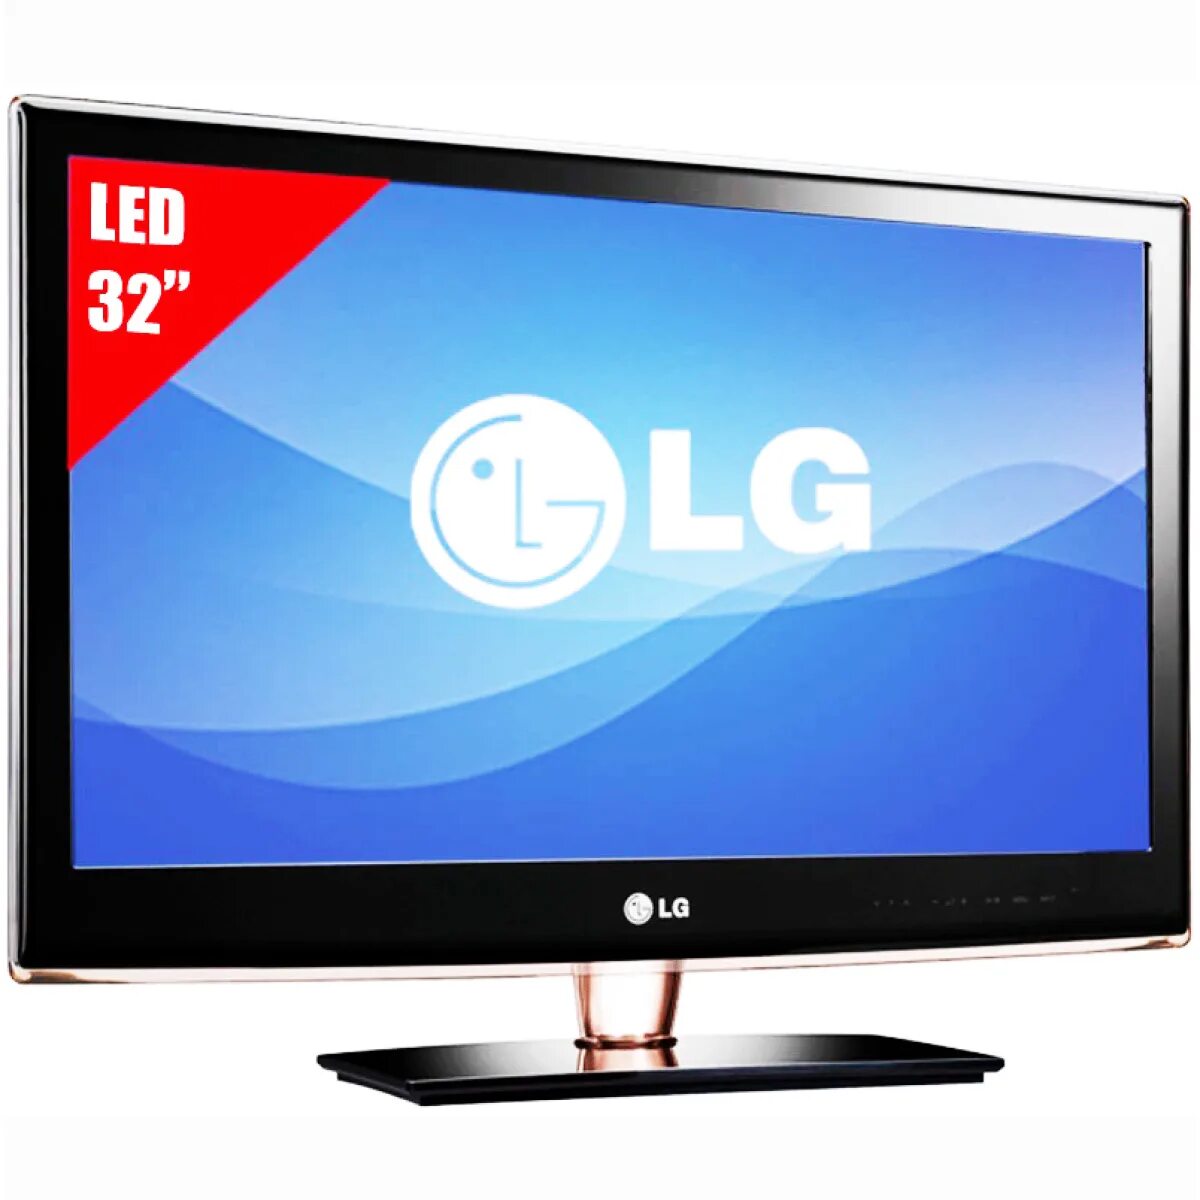 LG led TV 32. LG led LCD 3d TV 32lb2. LG 32 led Television. ДНС телевизоры 32 дюйма Лджи. Lg купить в россии